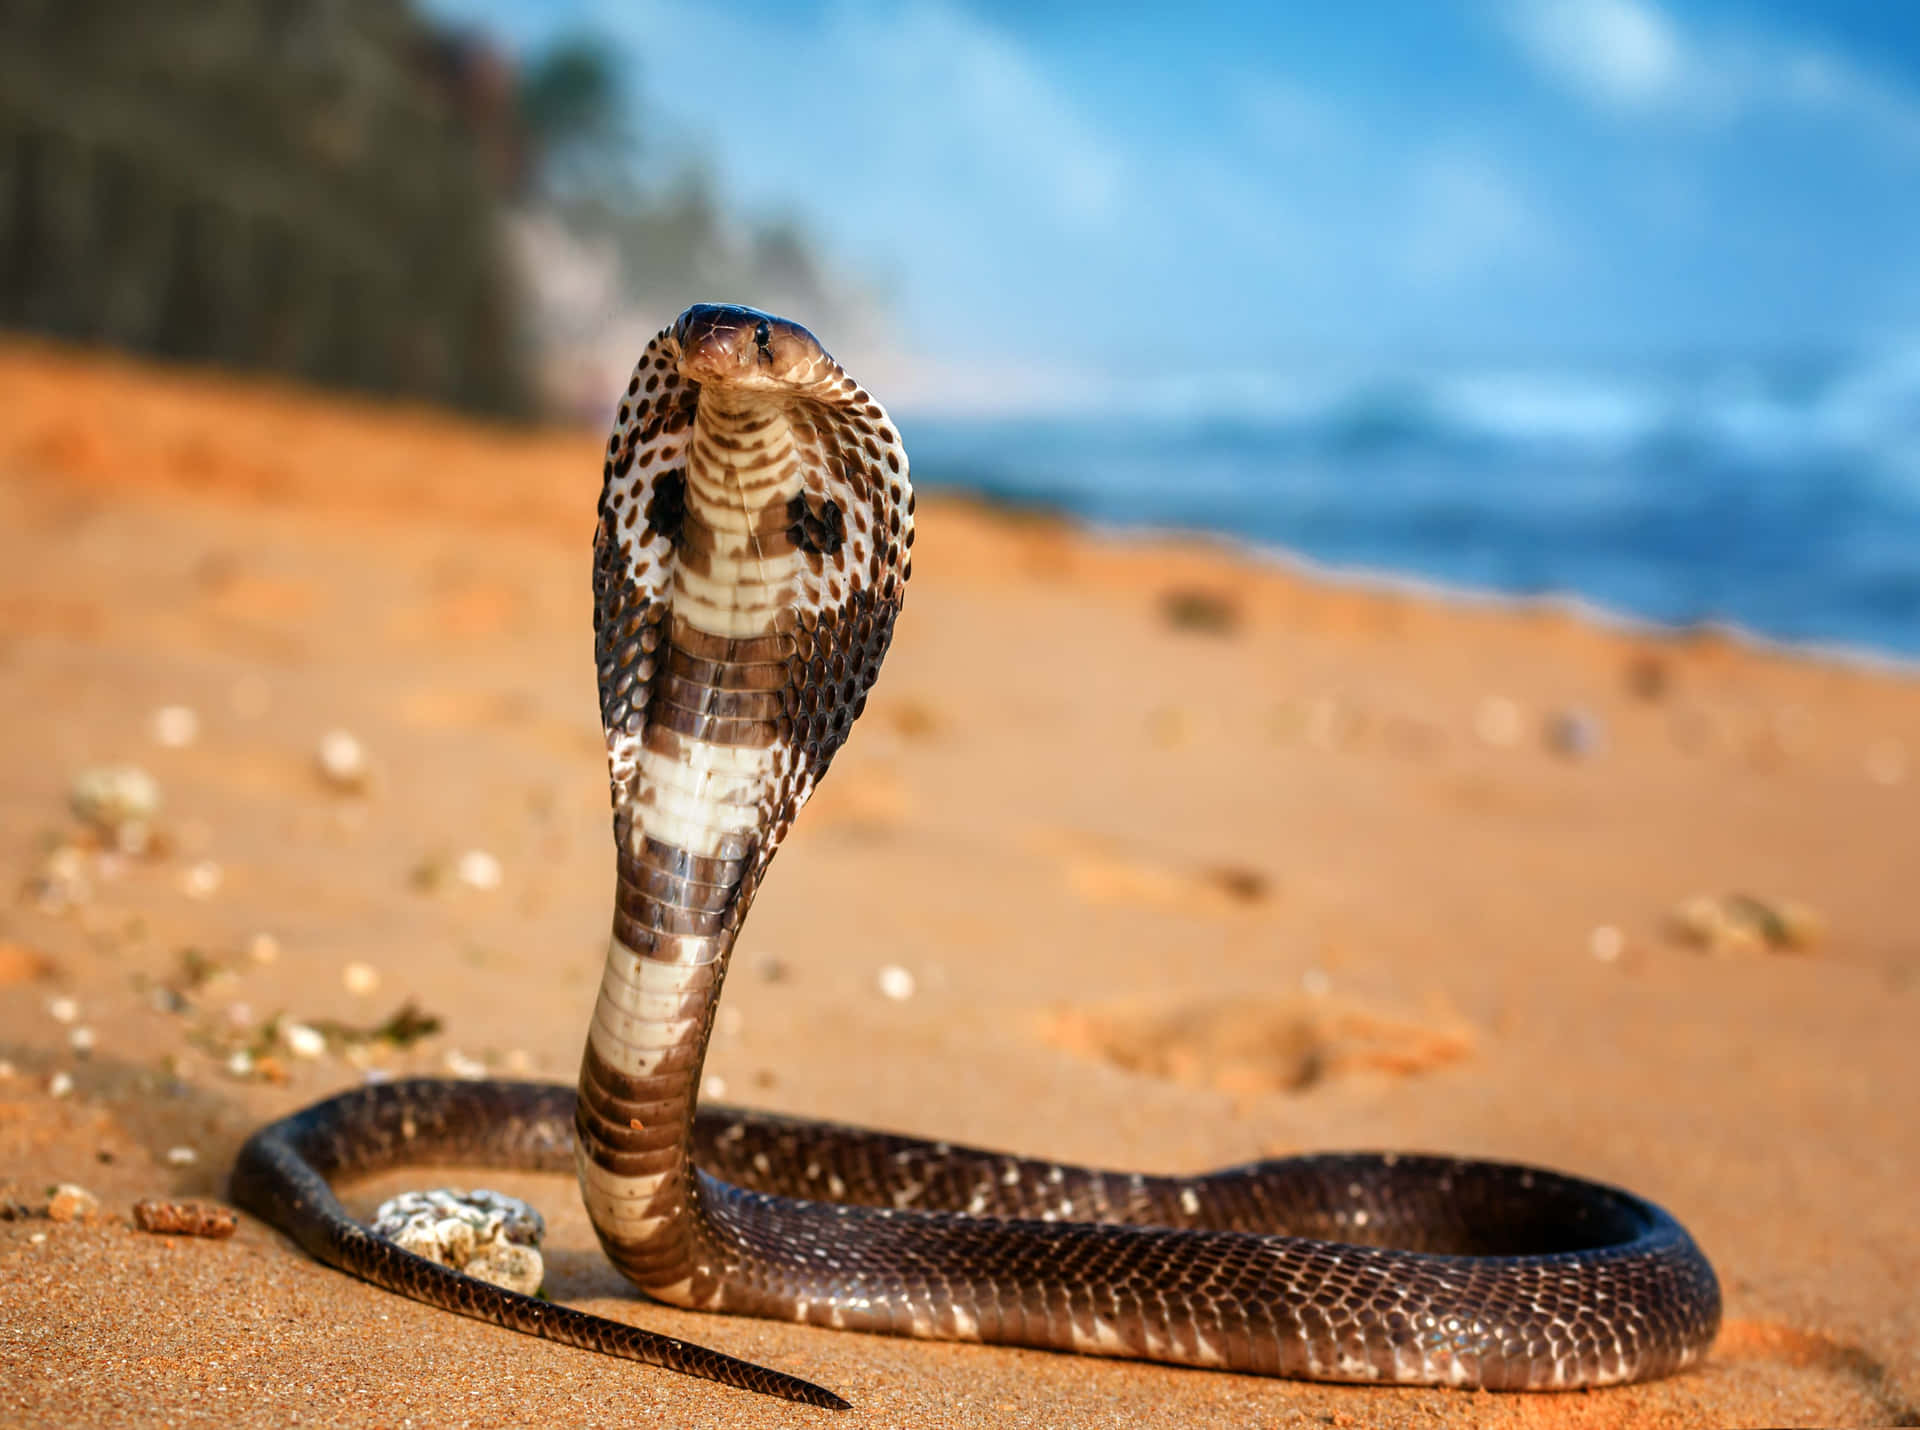 Unaamenazante Cobra Real Desenrollada En Su Hábitat Natural